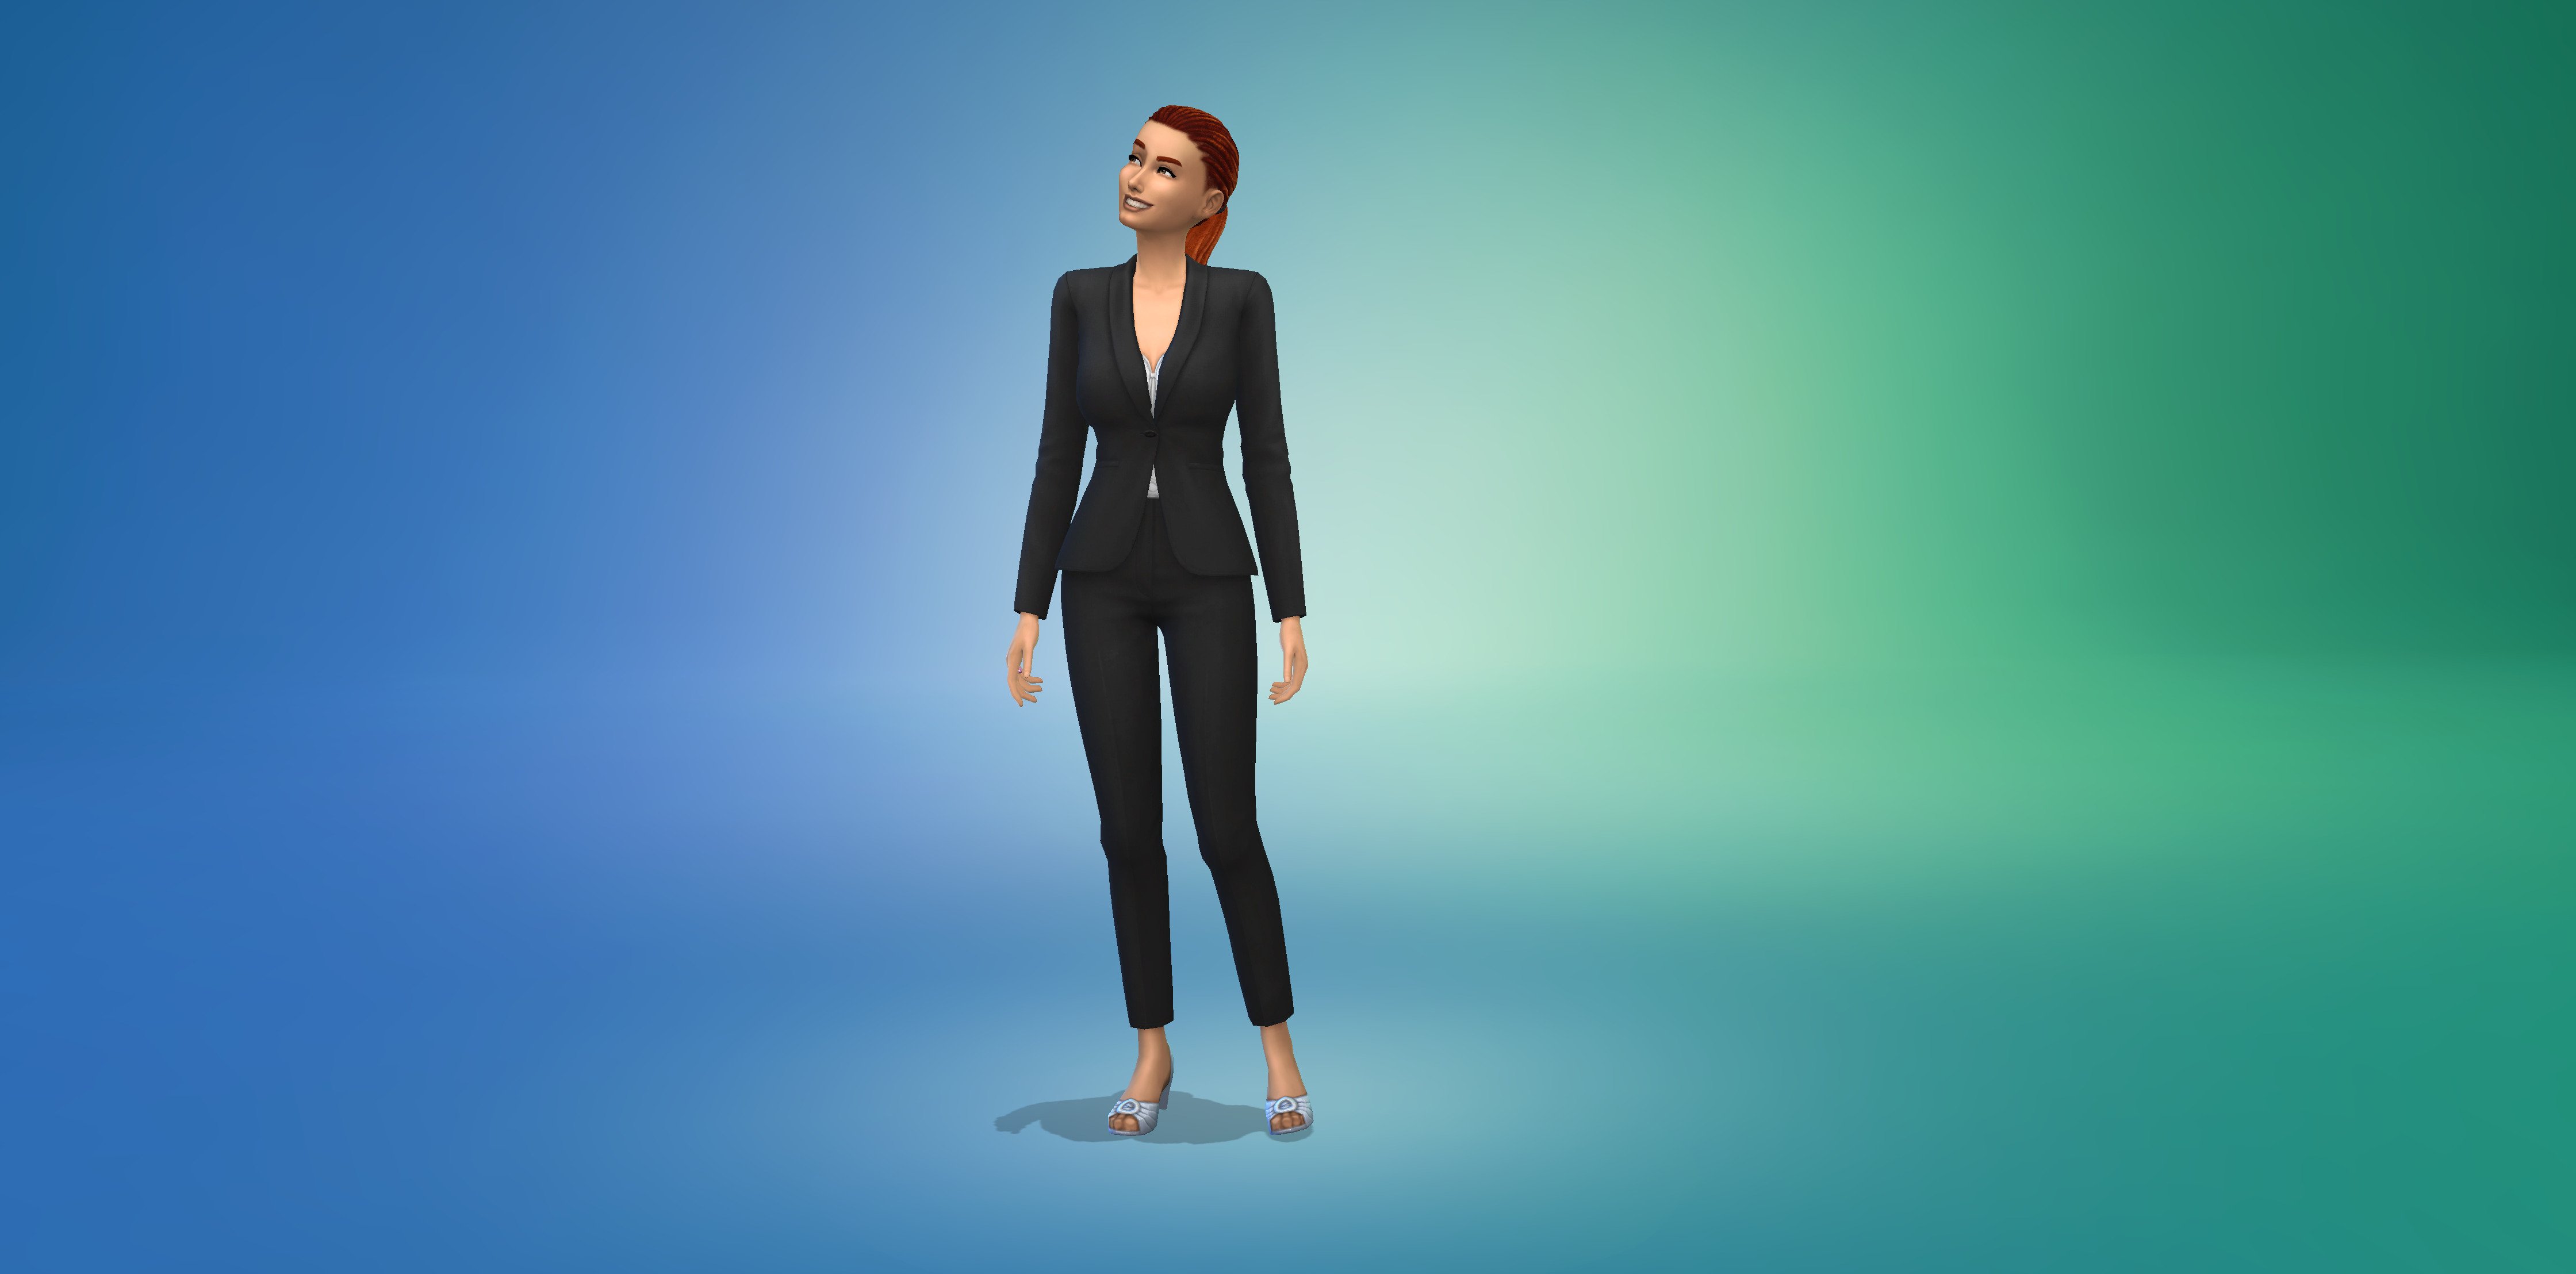 Les nouvelles tenues et coiffures du pack Sims 4 Mariage